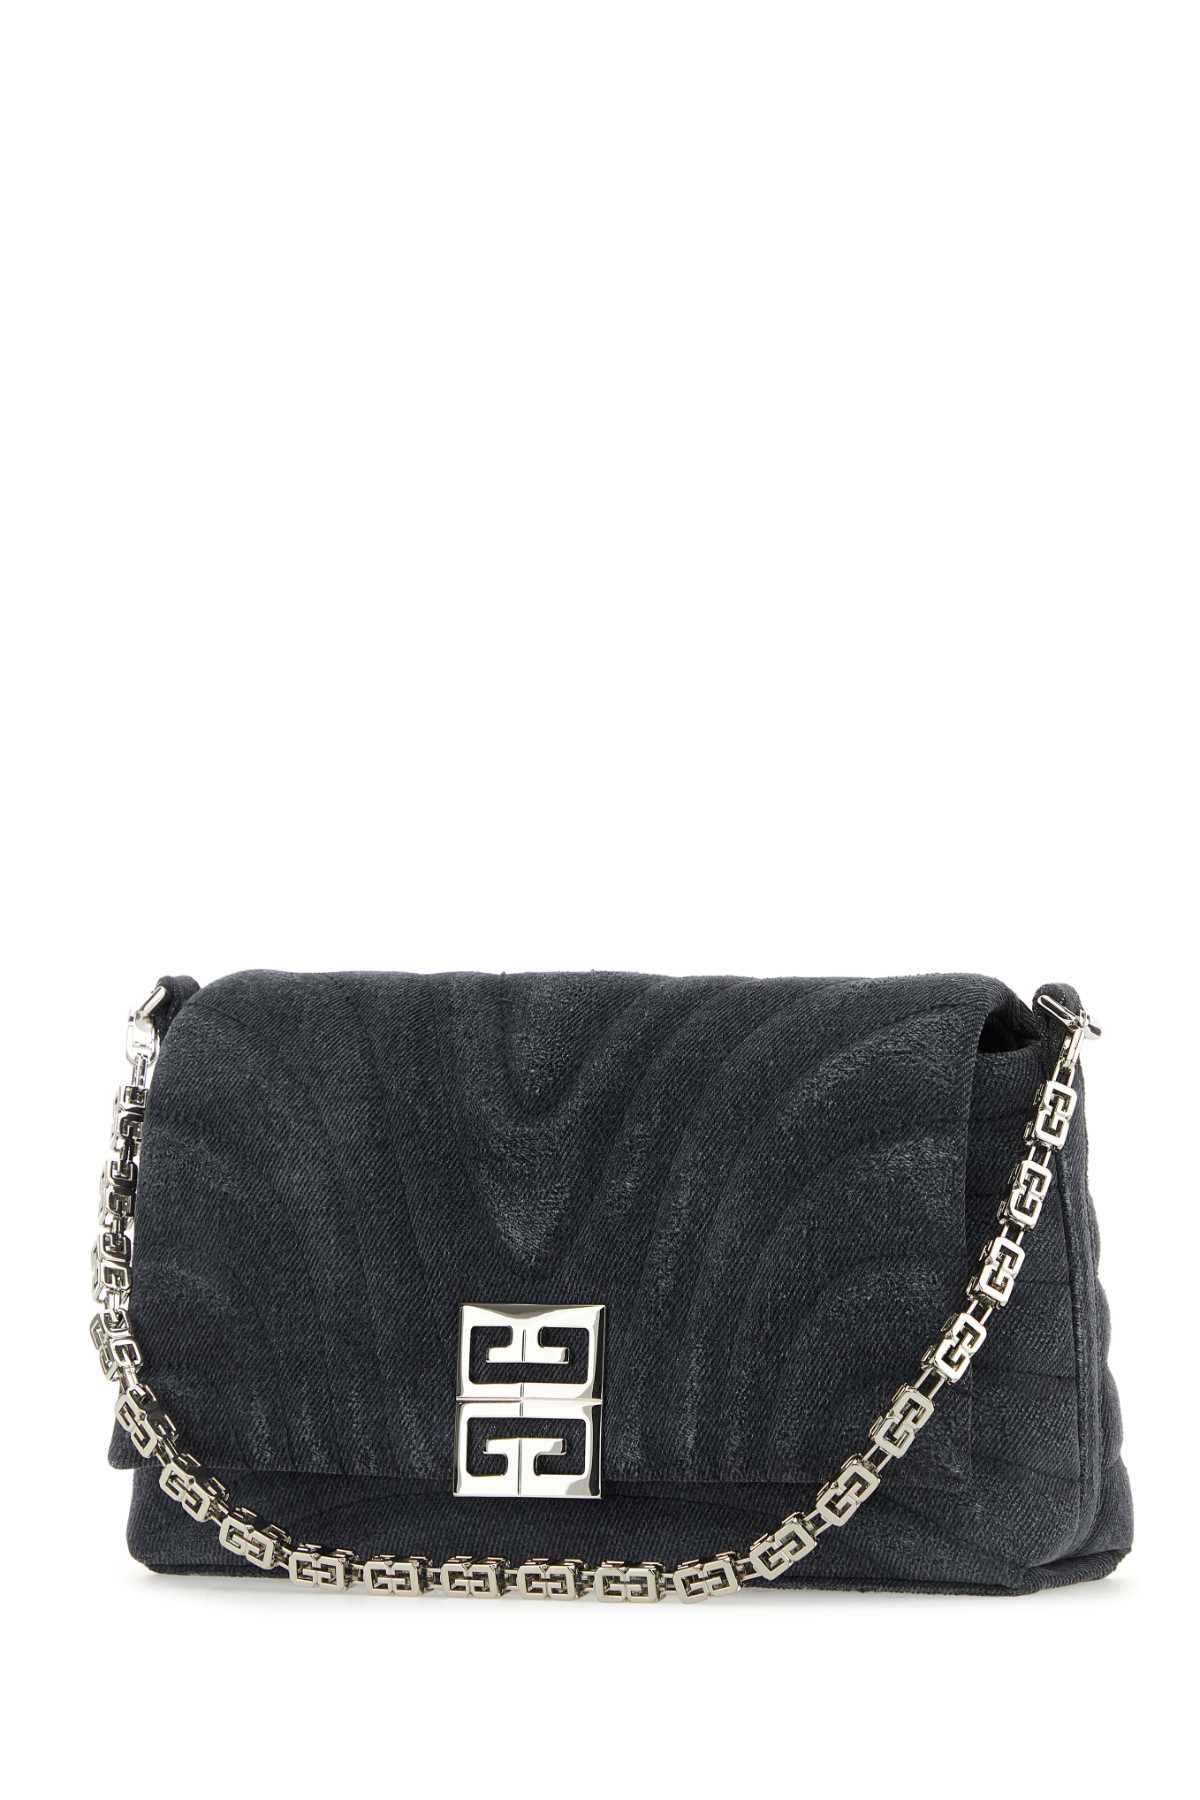 Shop Givenchy Black Denim Medium 4g Soft Handbag